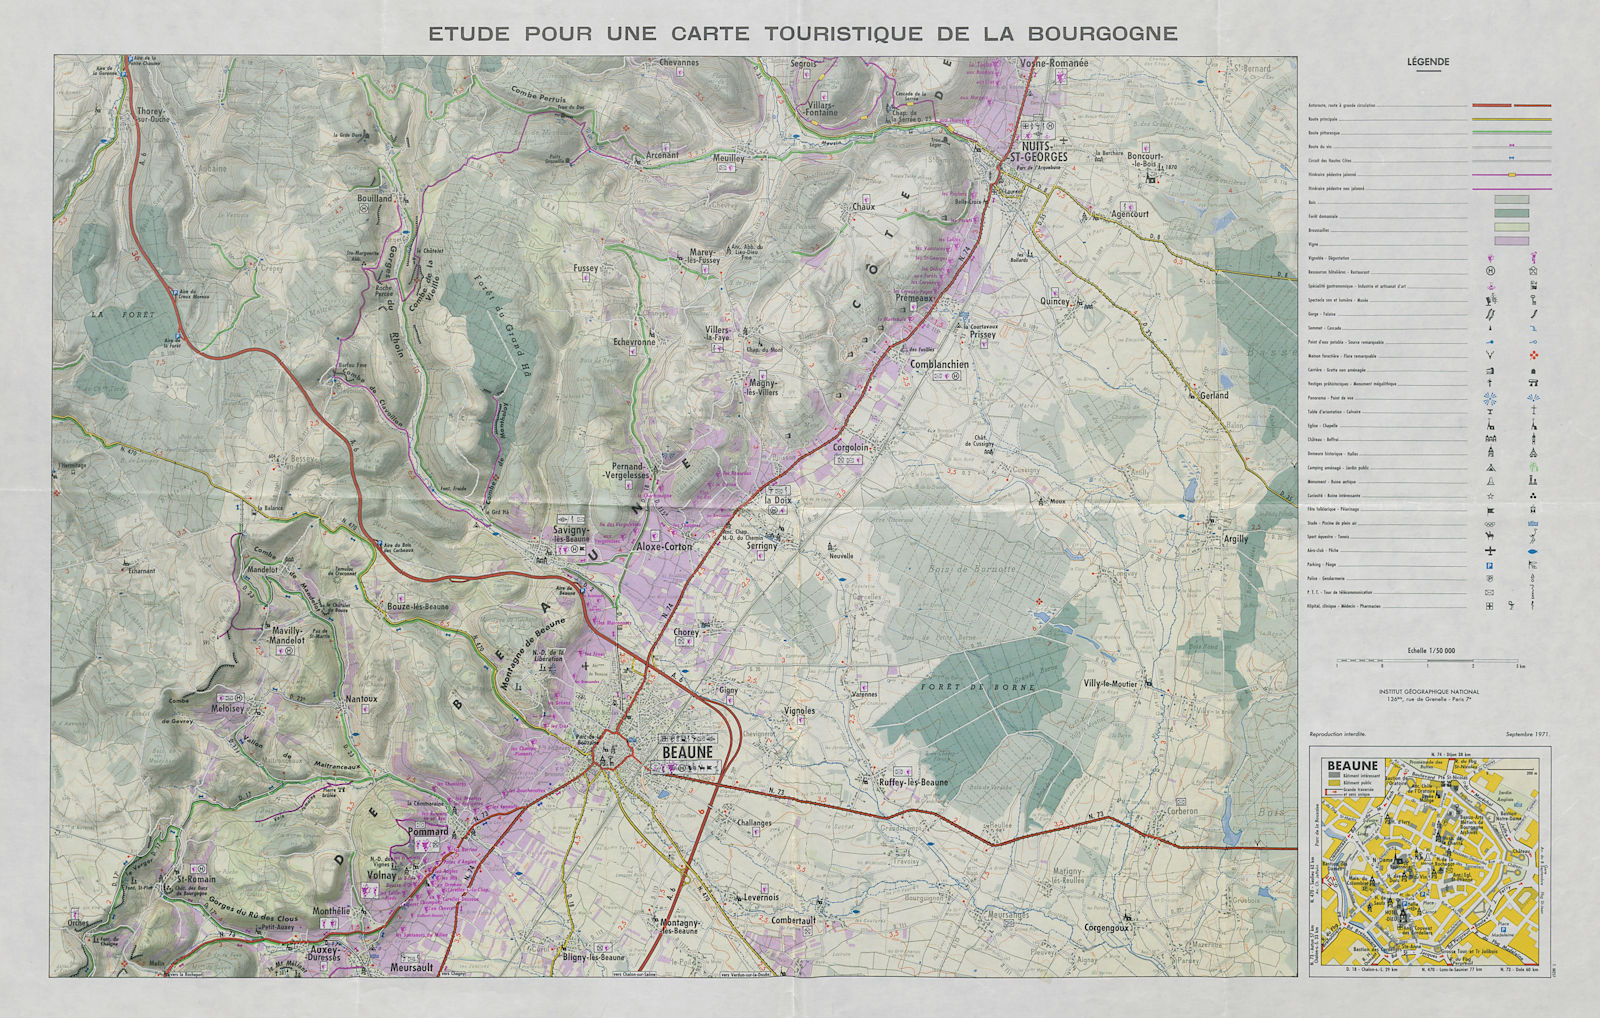 Etude pour une carte touristique de la Bourgogne. Burgundy tourist wine map 1971